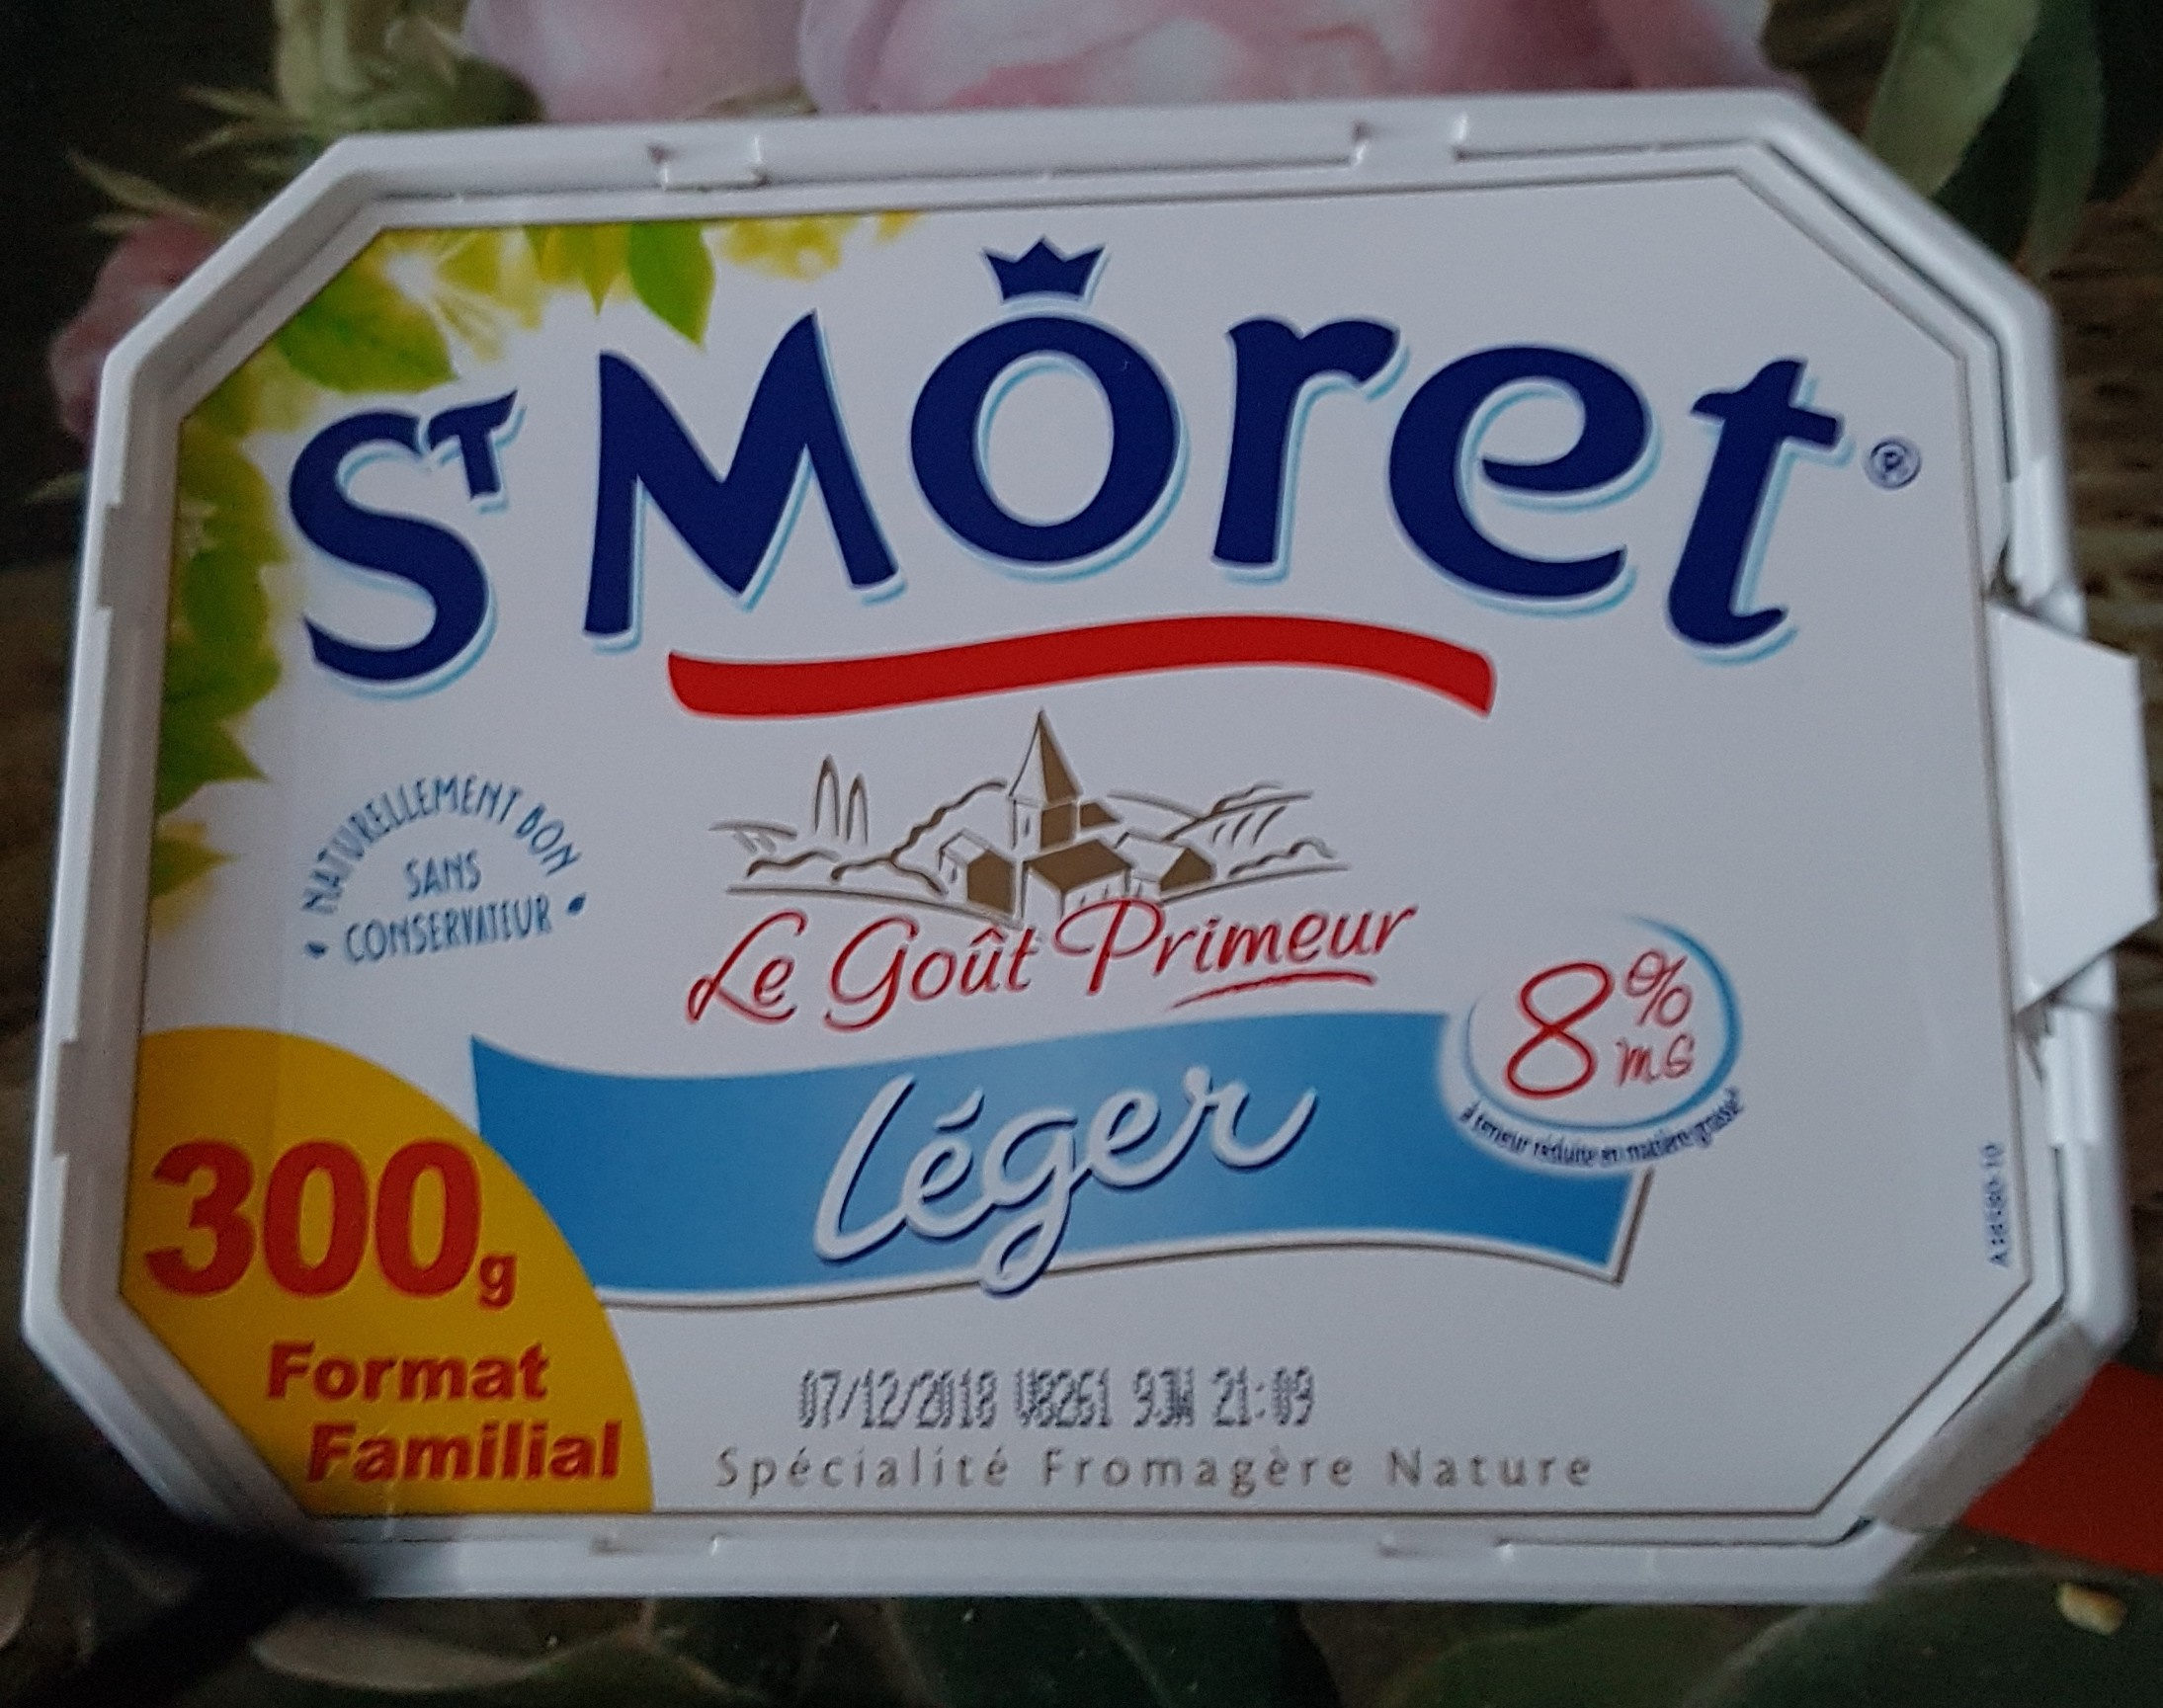 St Moret léger 8% mg - Product - fr